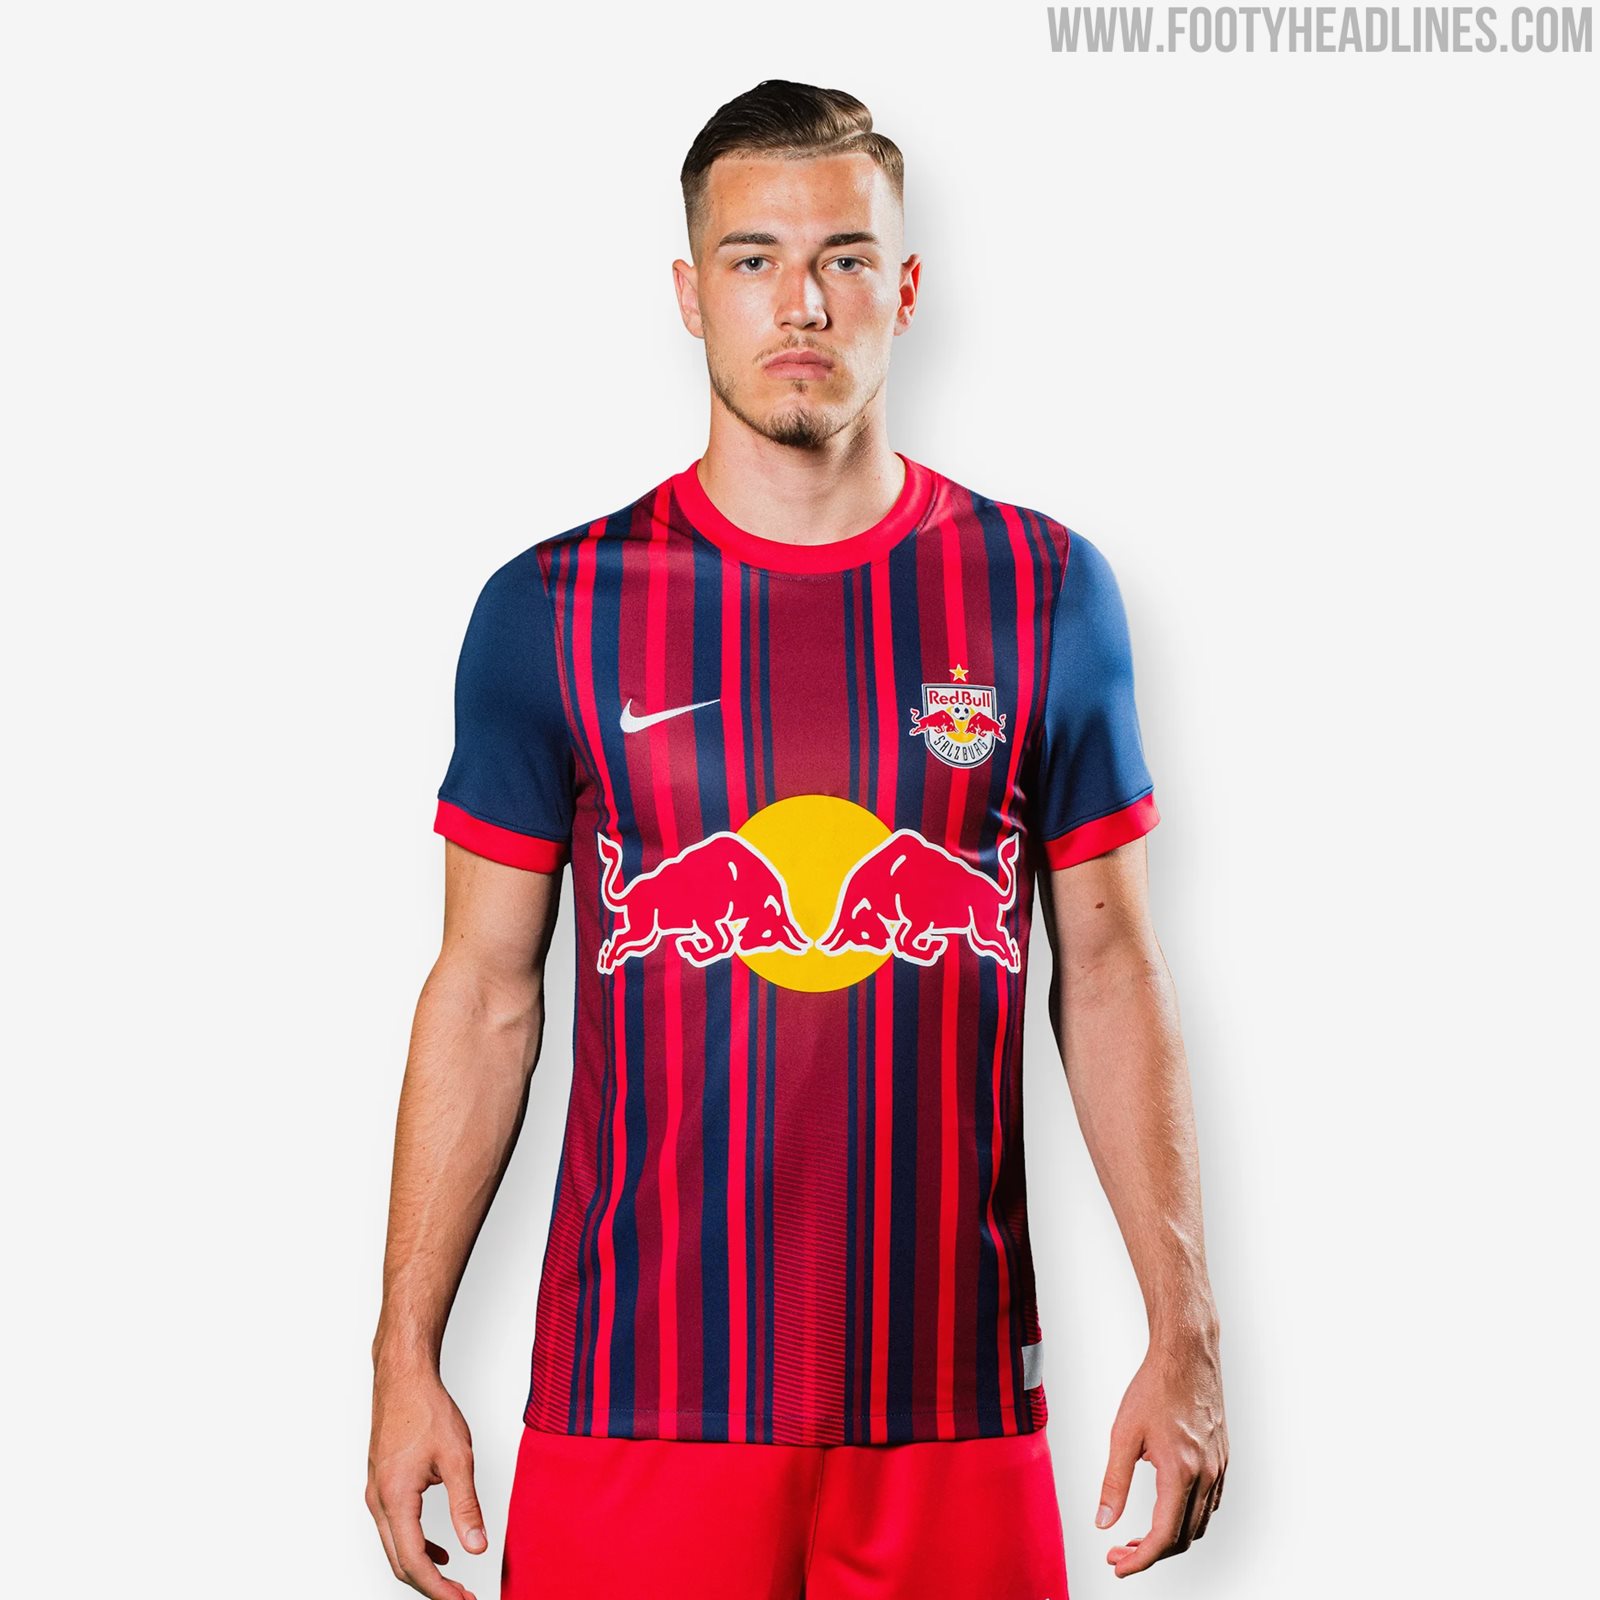 Red Bull Salzburg 22-23 Away Kit Released - Footy Headlines